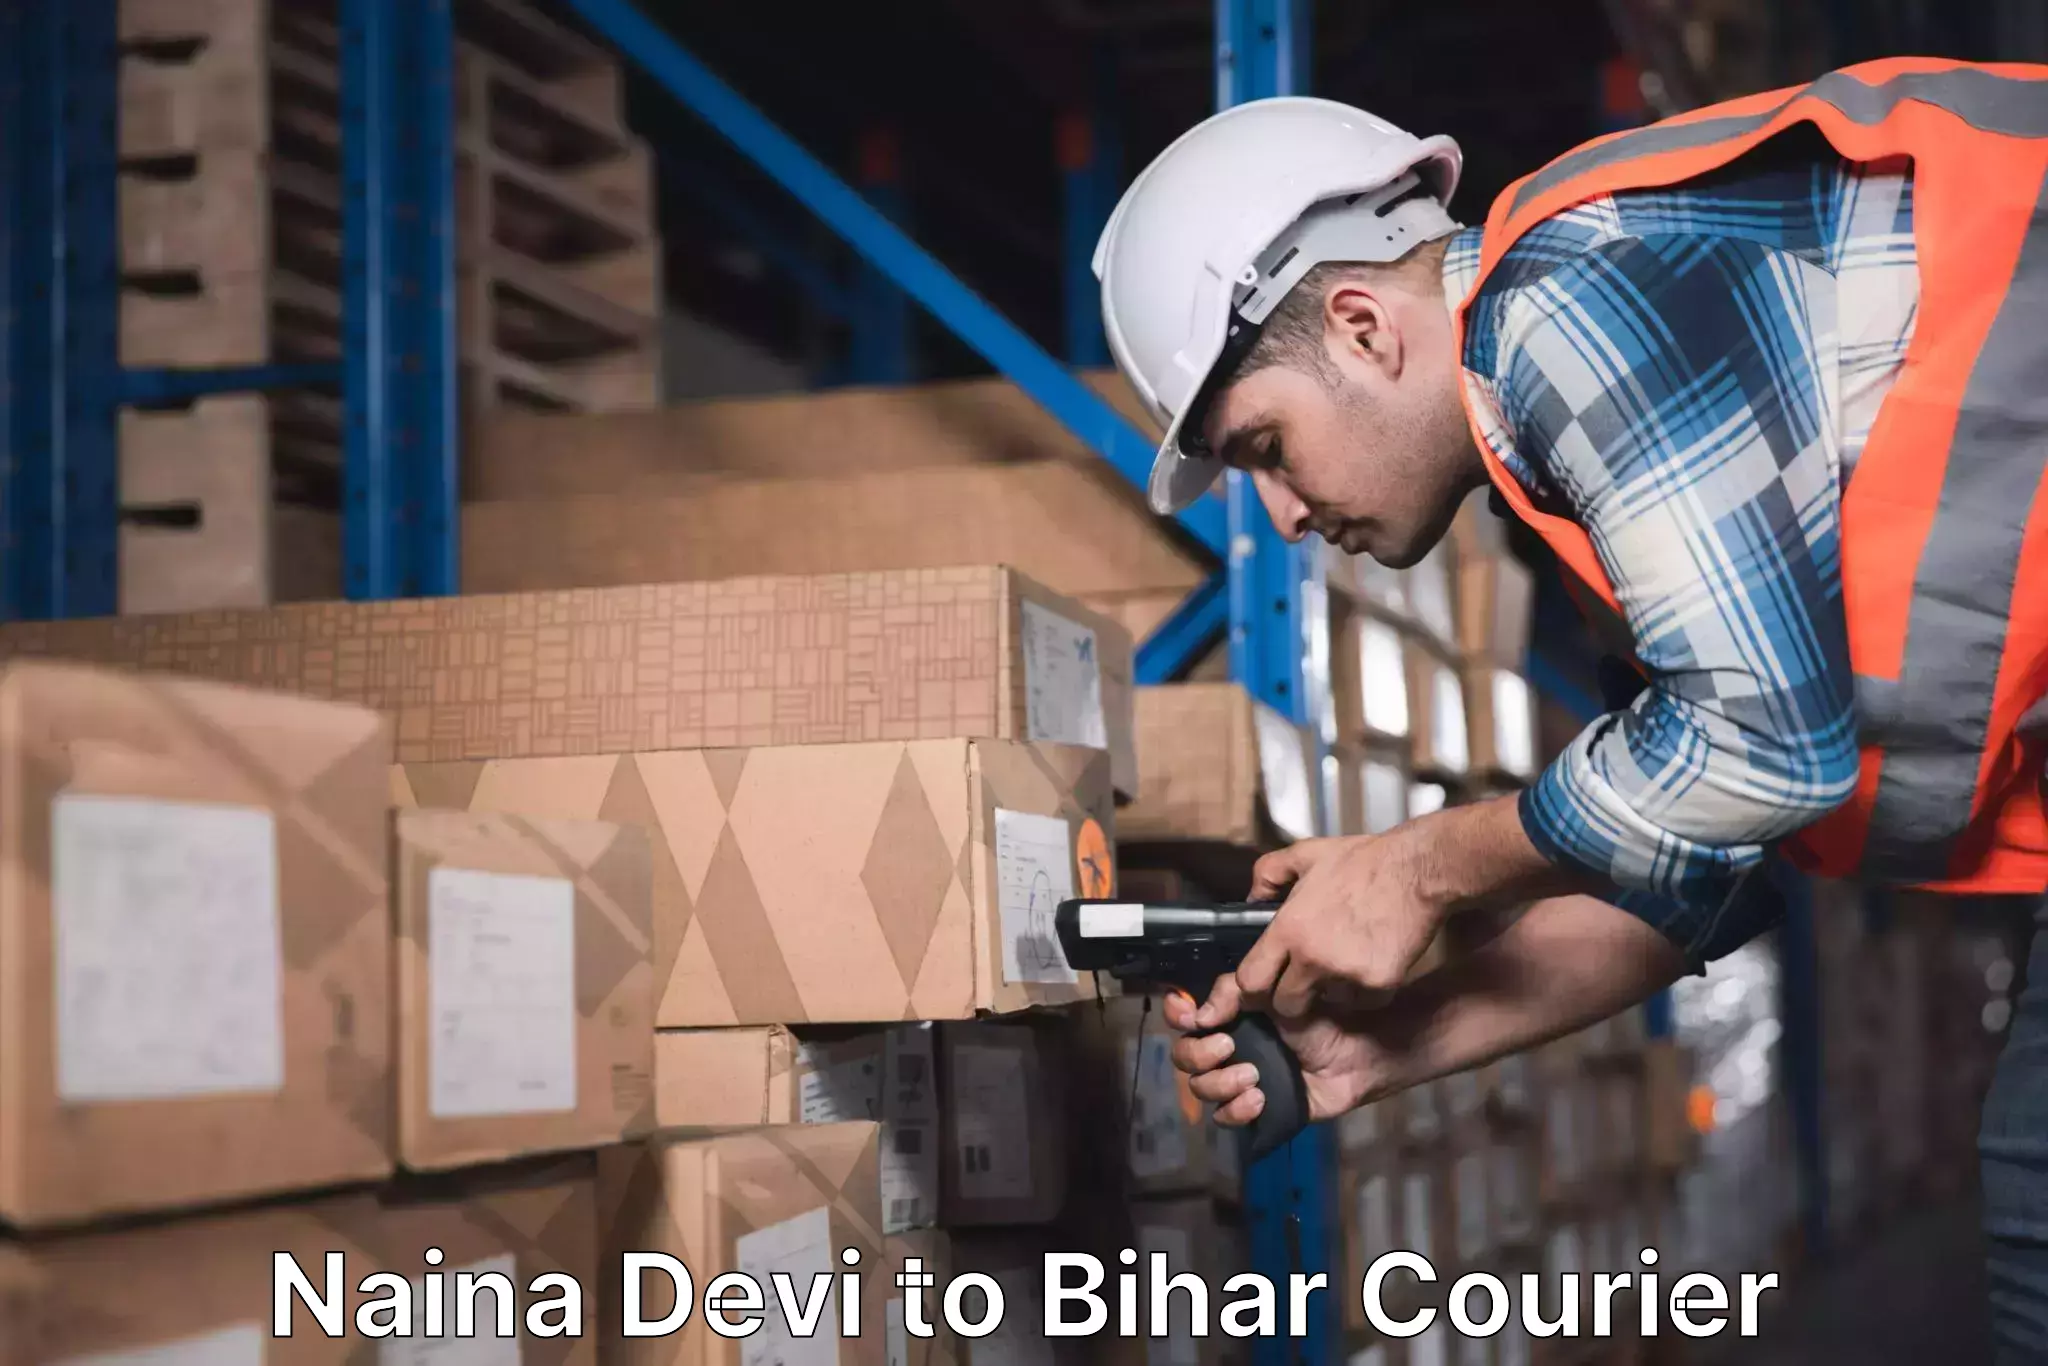 24/7 courier service Naina Devi to Jehanabad